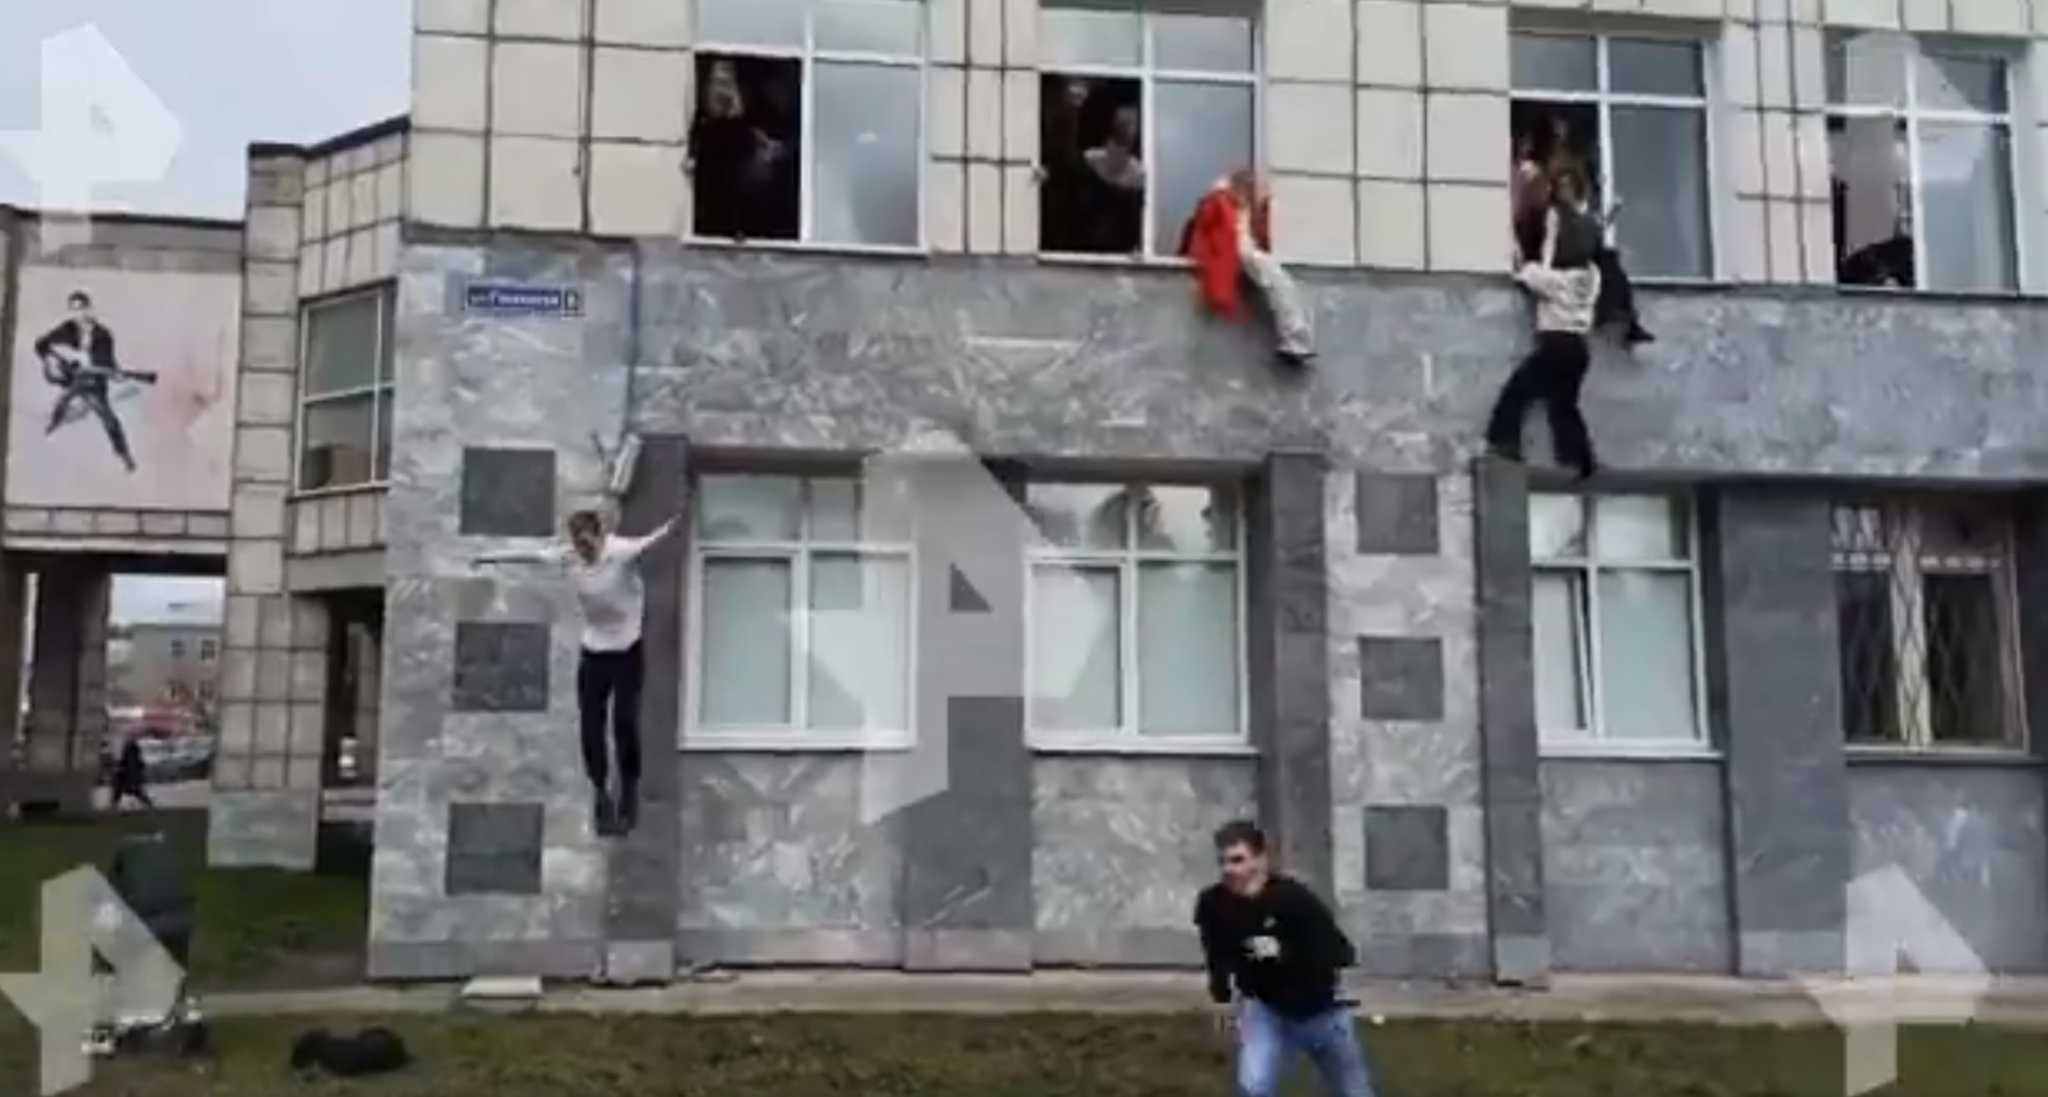 Πυροβολισμοί σε πανεπιστήμιο στην Σιβηρία! Φοιτητές πηδούν από τα παράθυρα (video)